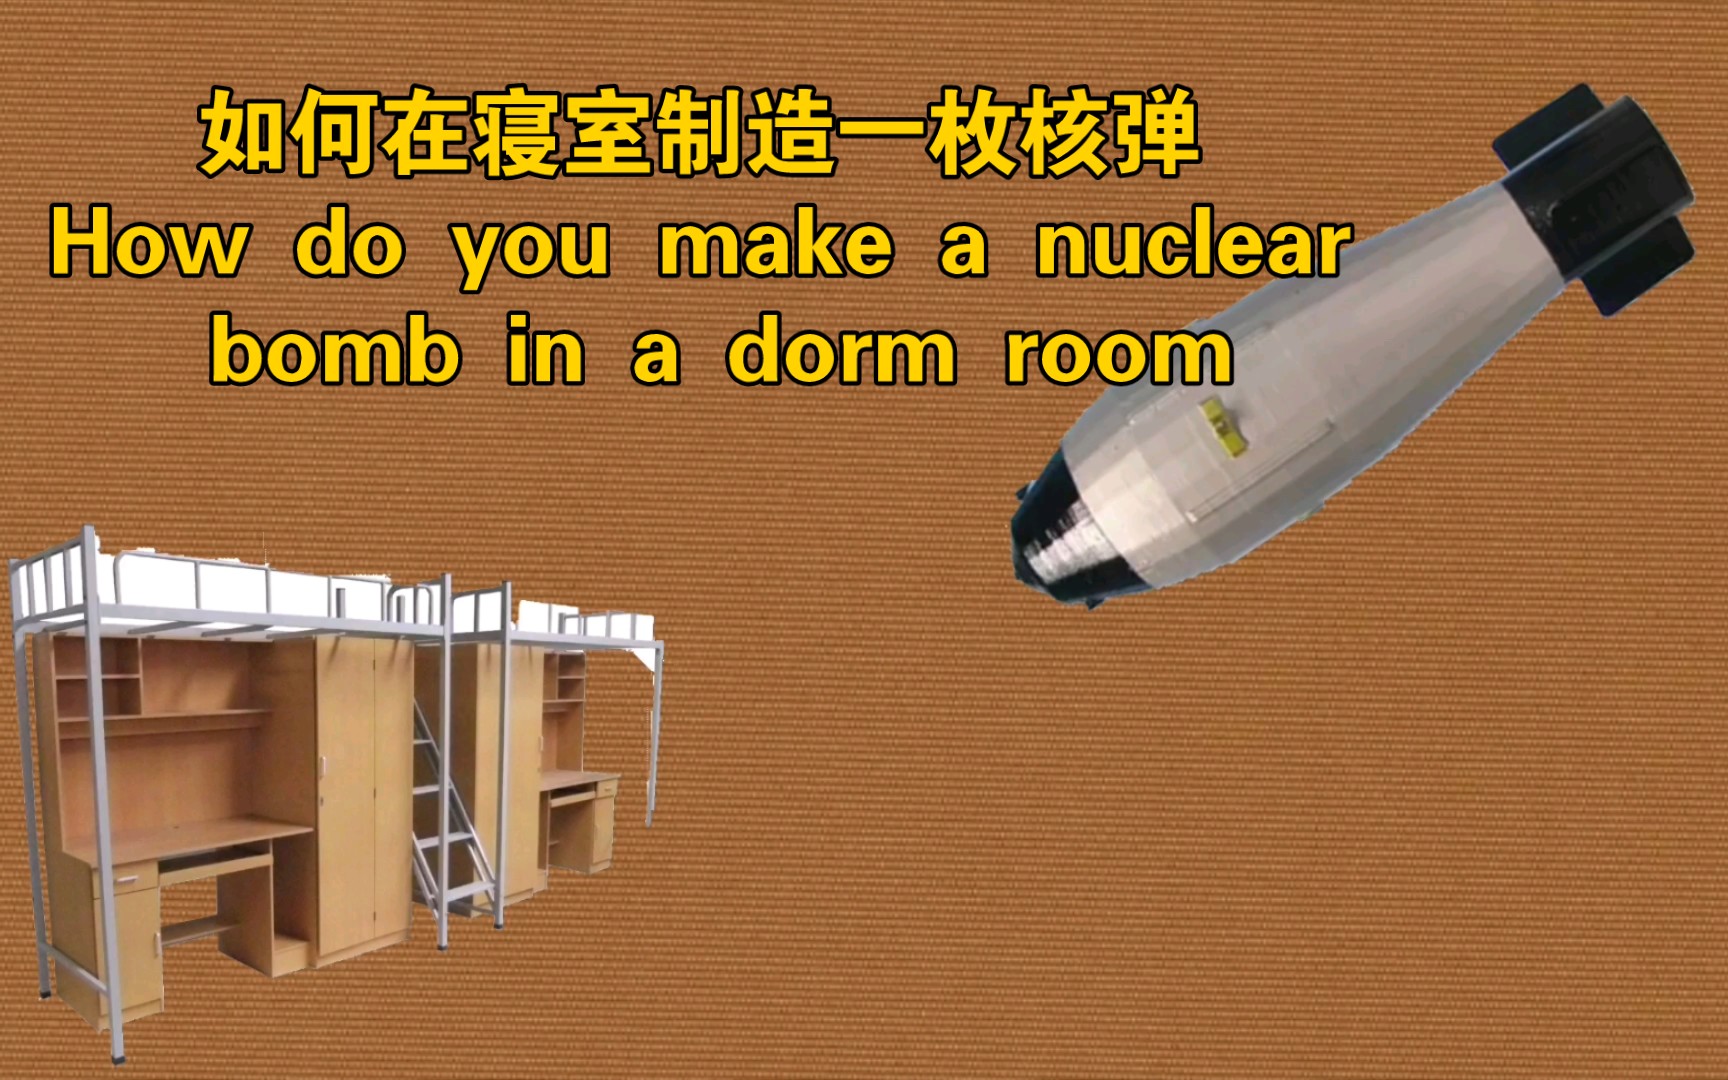 【干货】如何在寝室制造一枚小当量核弹以应对不必要的打扰